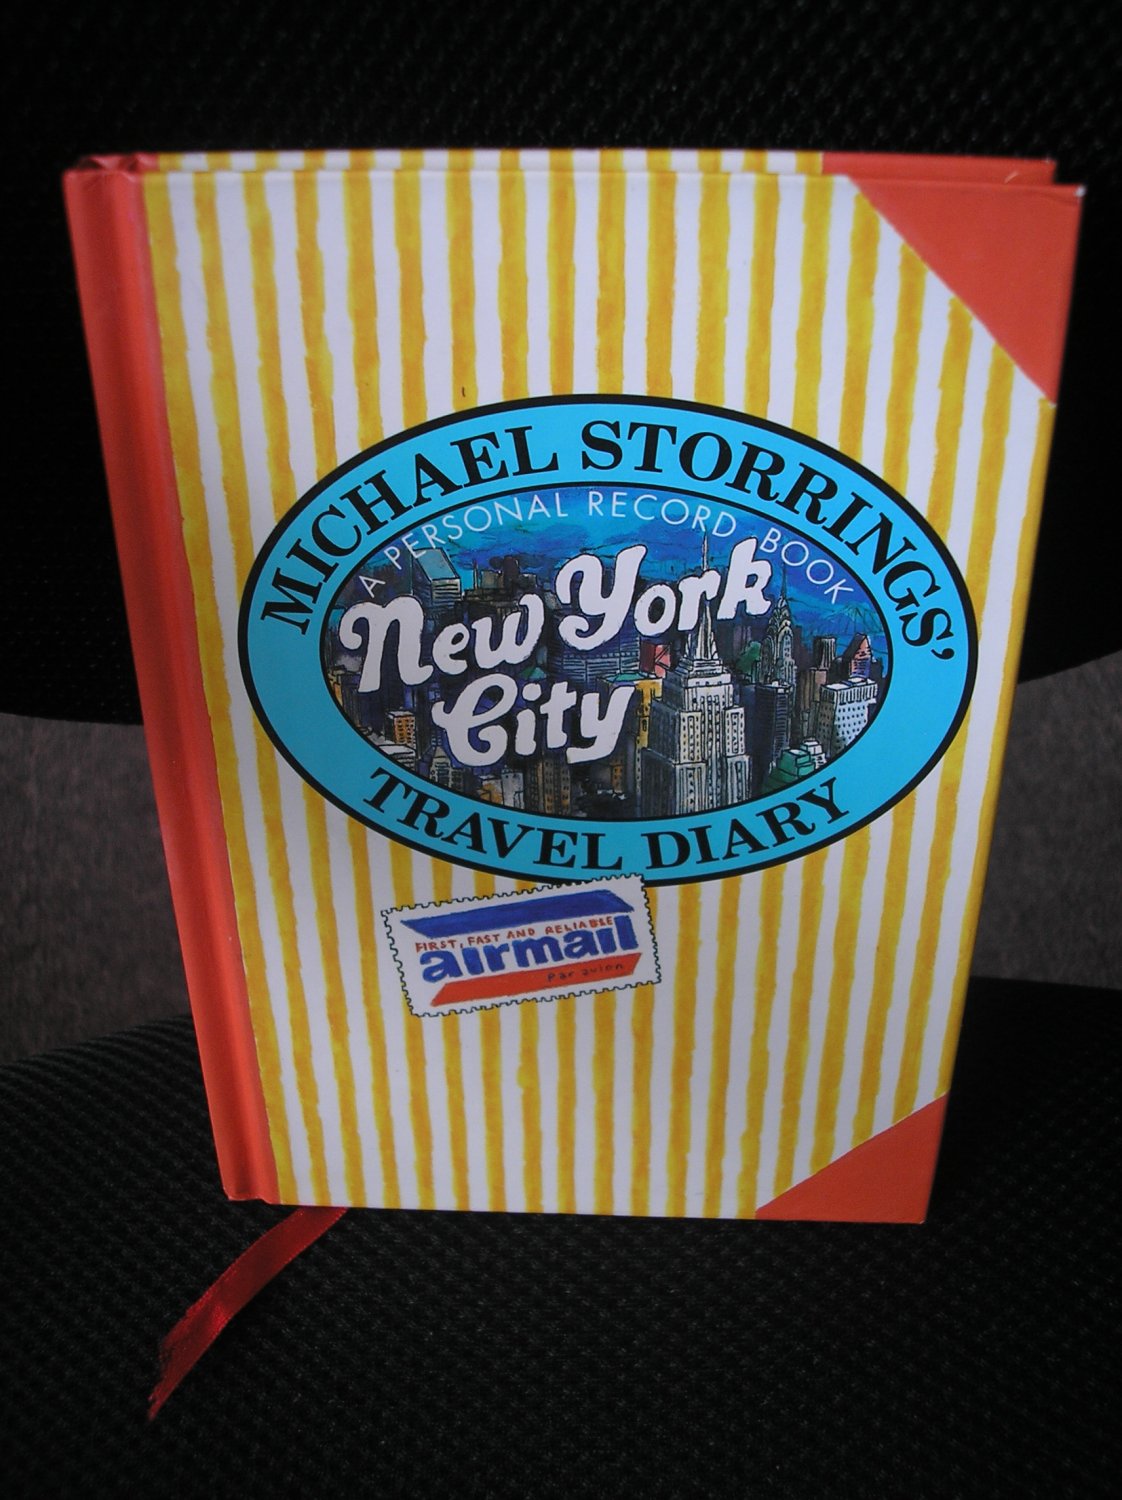 MICHAEL STORRINGS' TRAVEL DIARY: NEW YORK CITY - WARNER TREASURES!